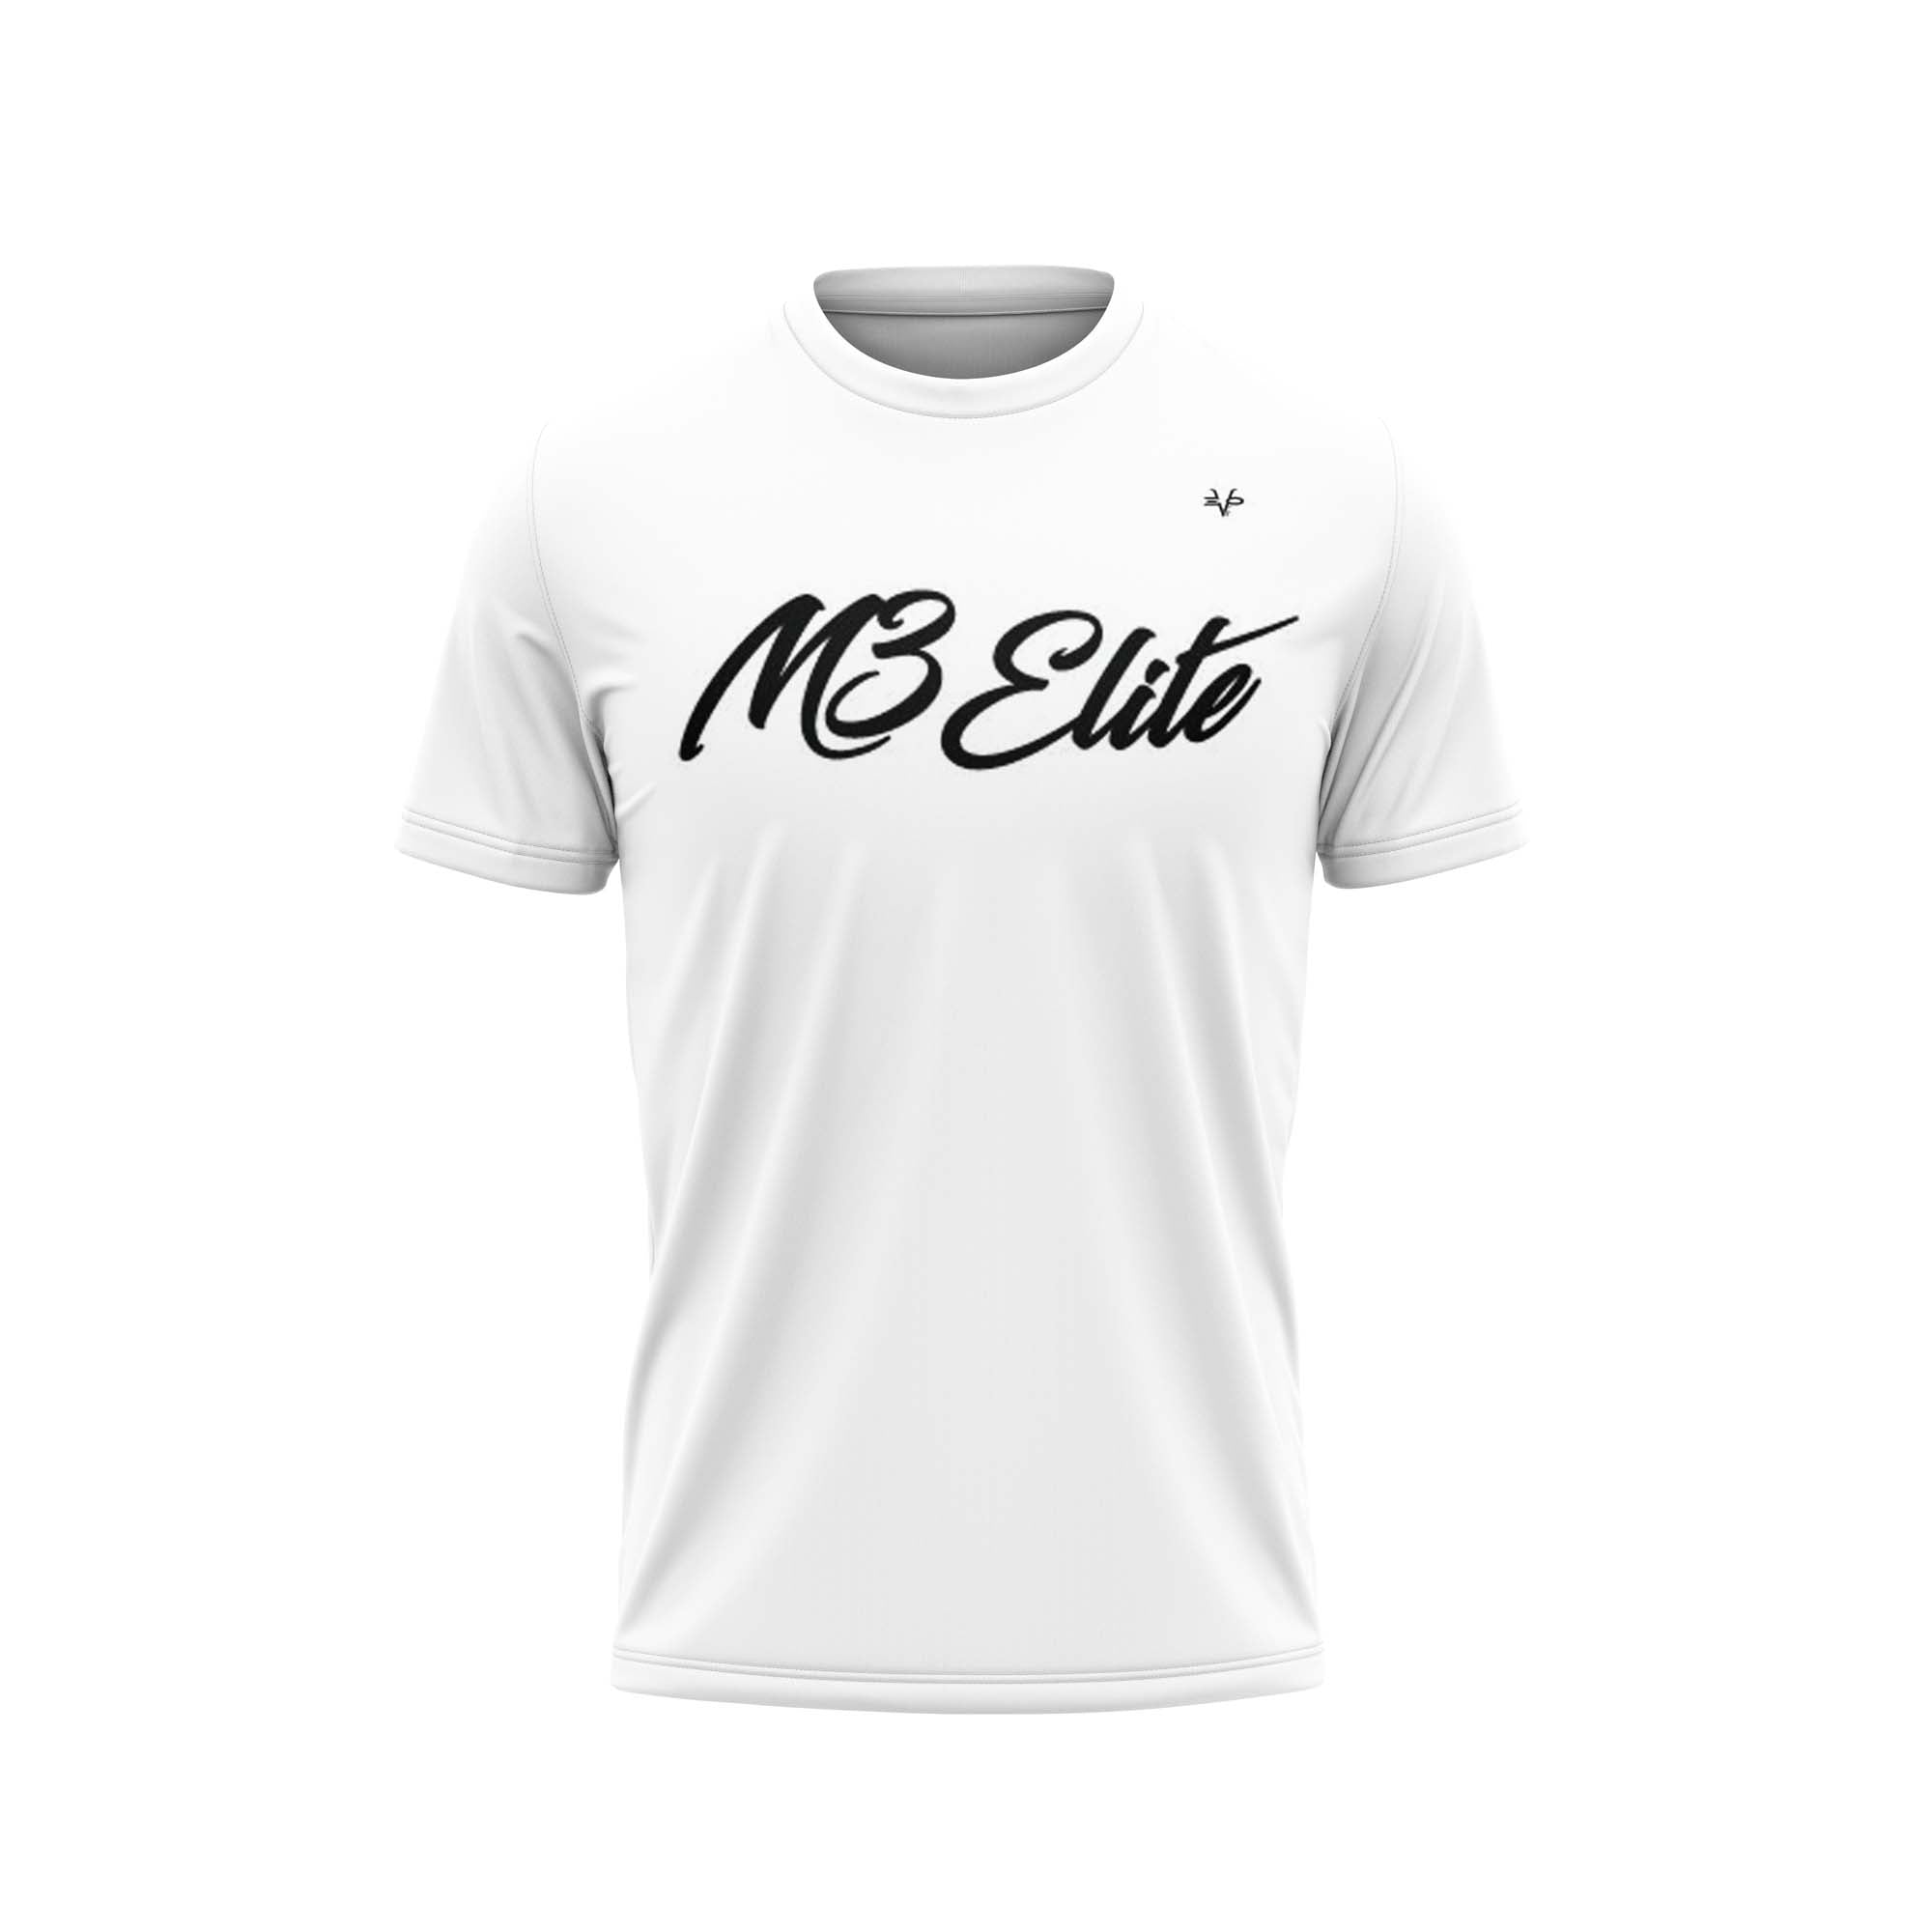 M3 ELITE Semi Sublimated Shirt White